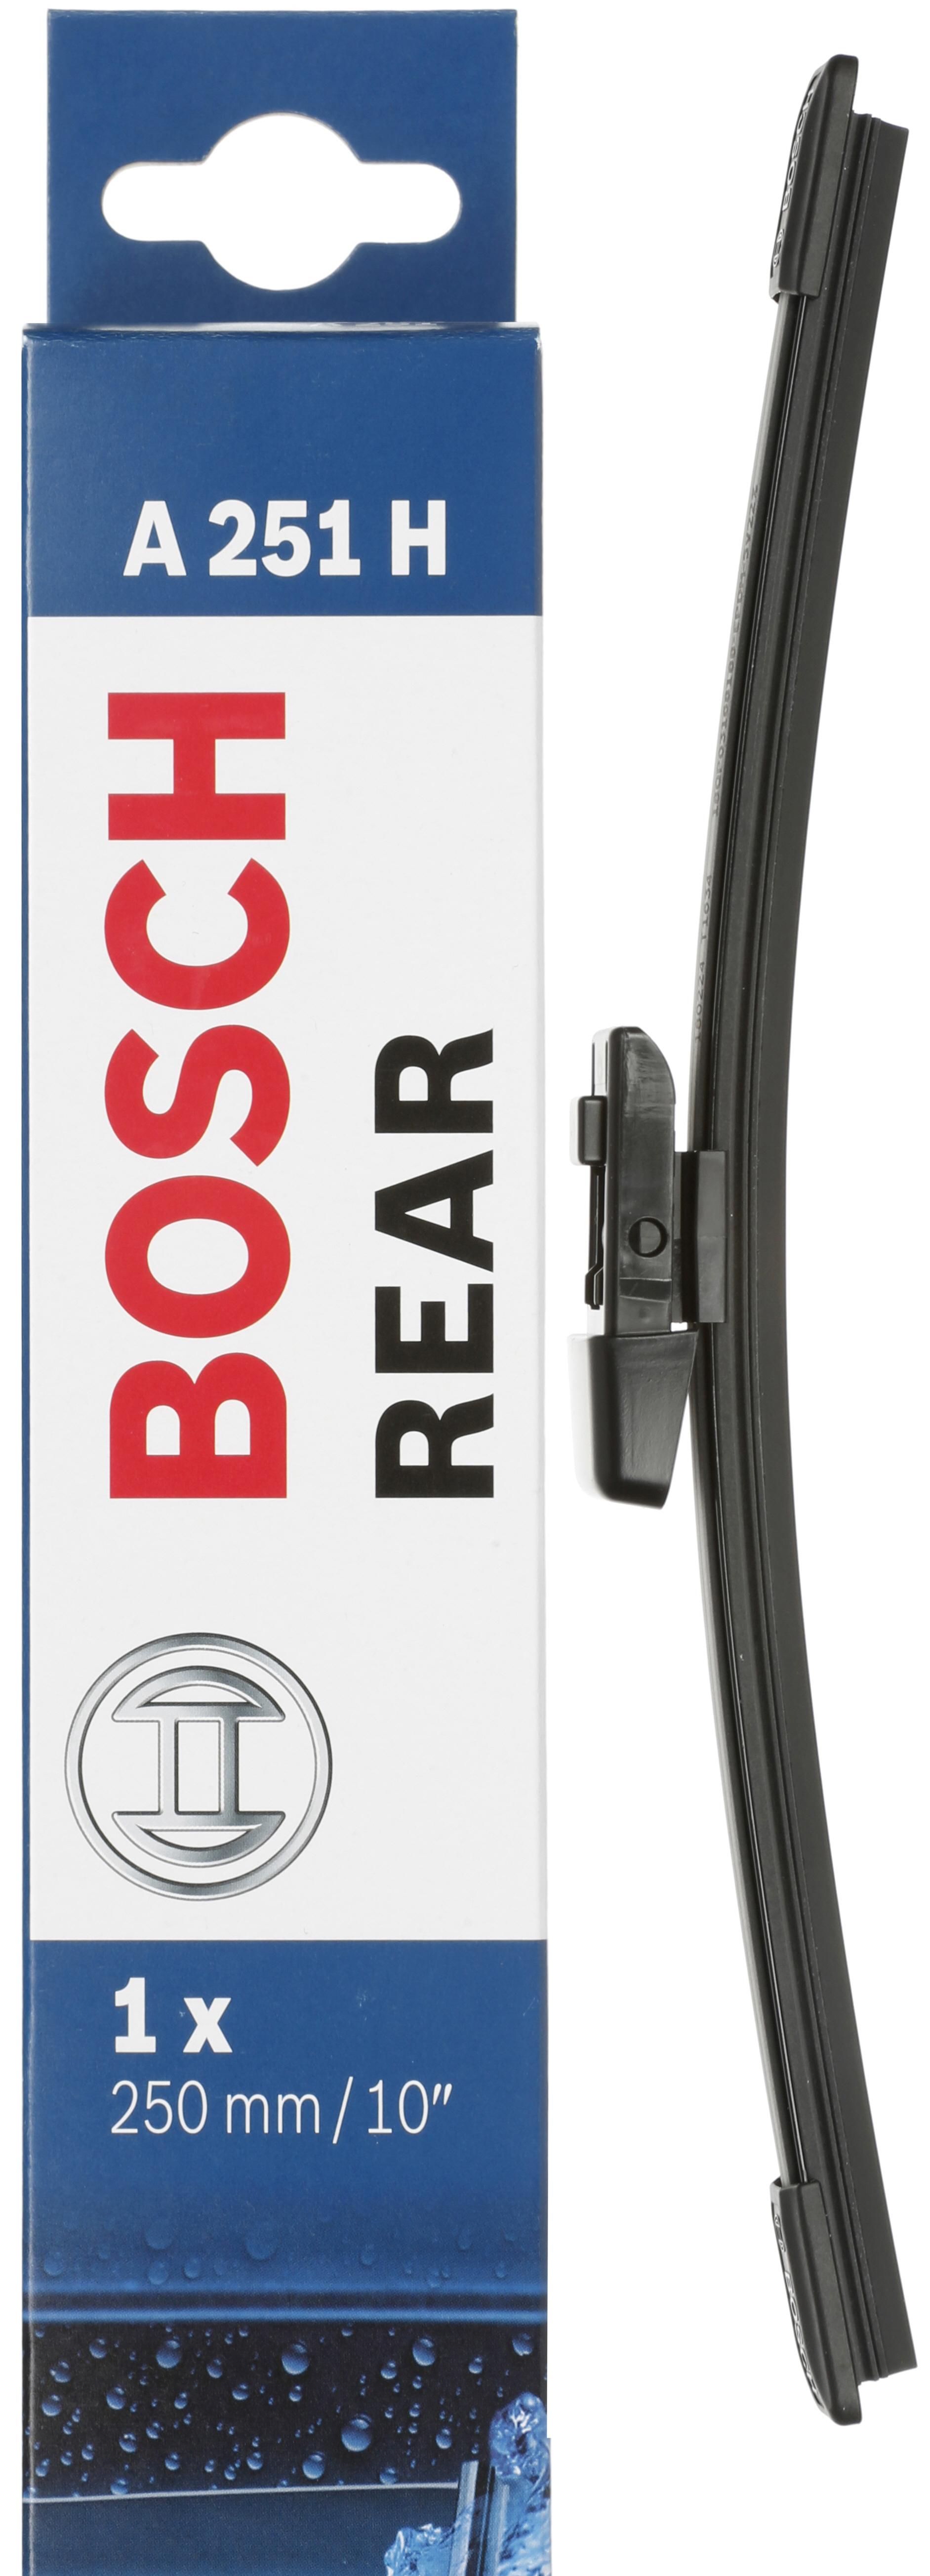 Bosch A251H Wiper Blade - Single